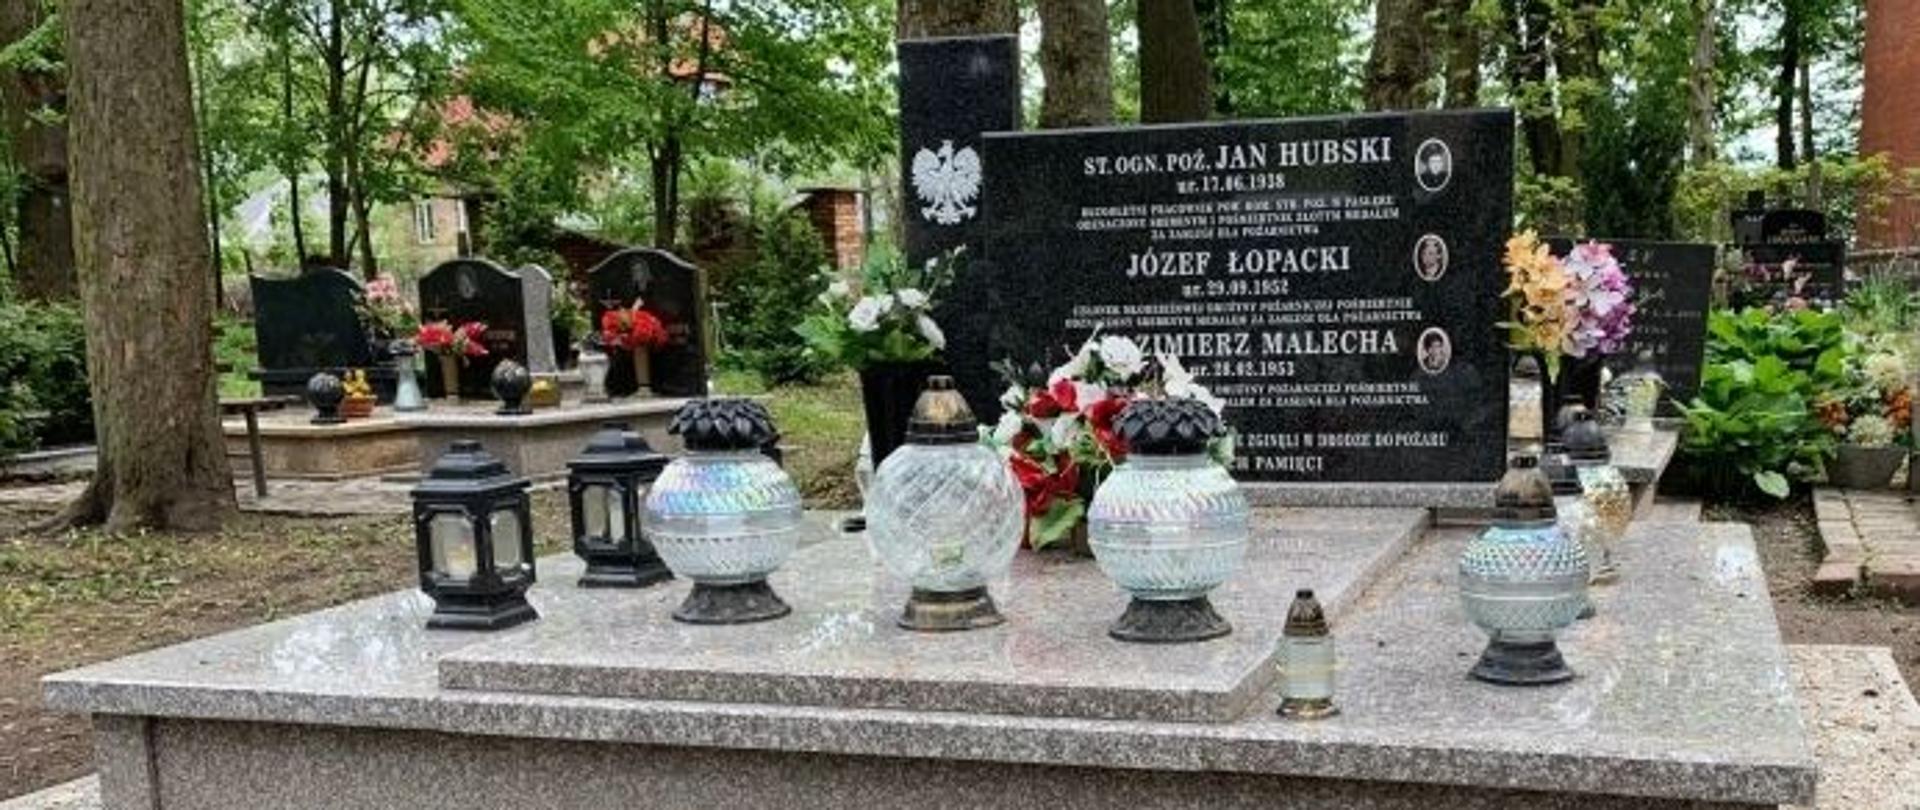 Zdjęcie przedstawia zbiorowy pomnik na cmentarzu, w którym pochowano zmarłych tragicznie strażaków. W tle widać drzewa oraz inne groby zmarłych.